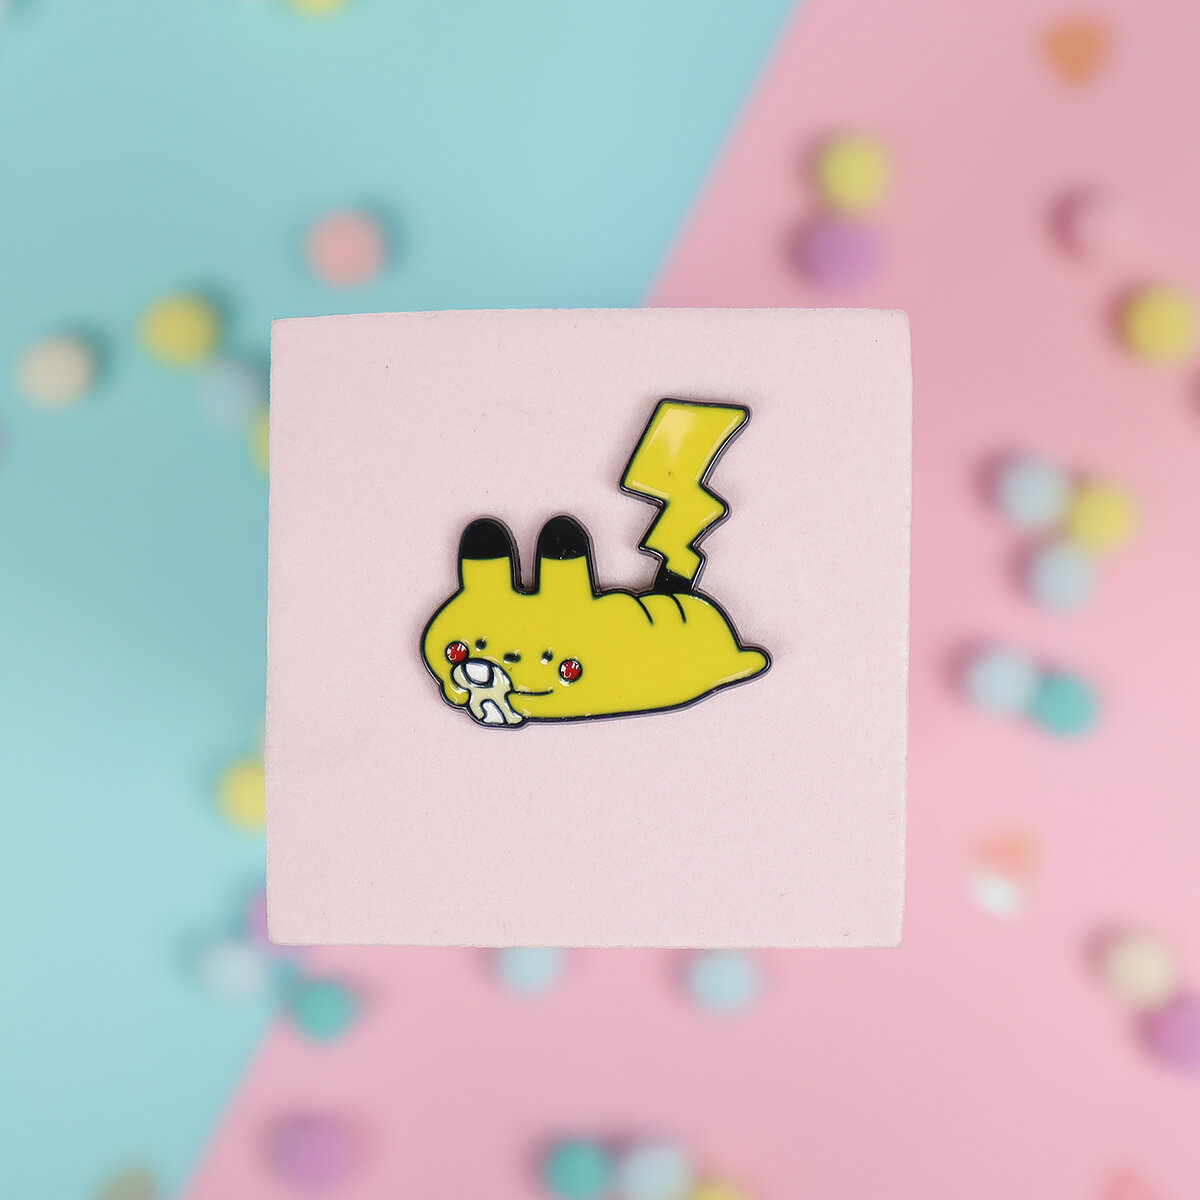 Pin - Pikachu spelar